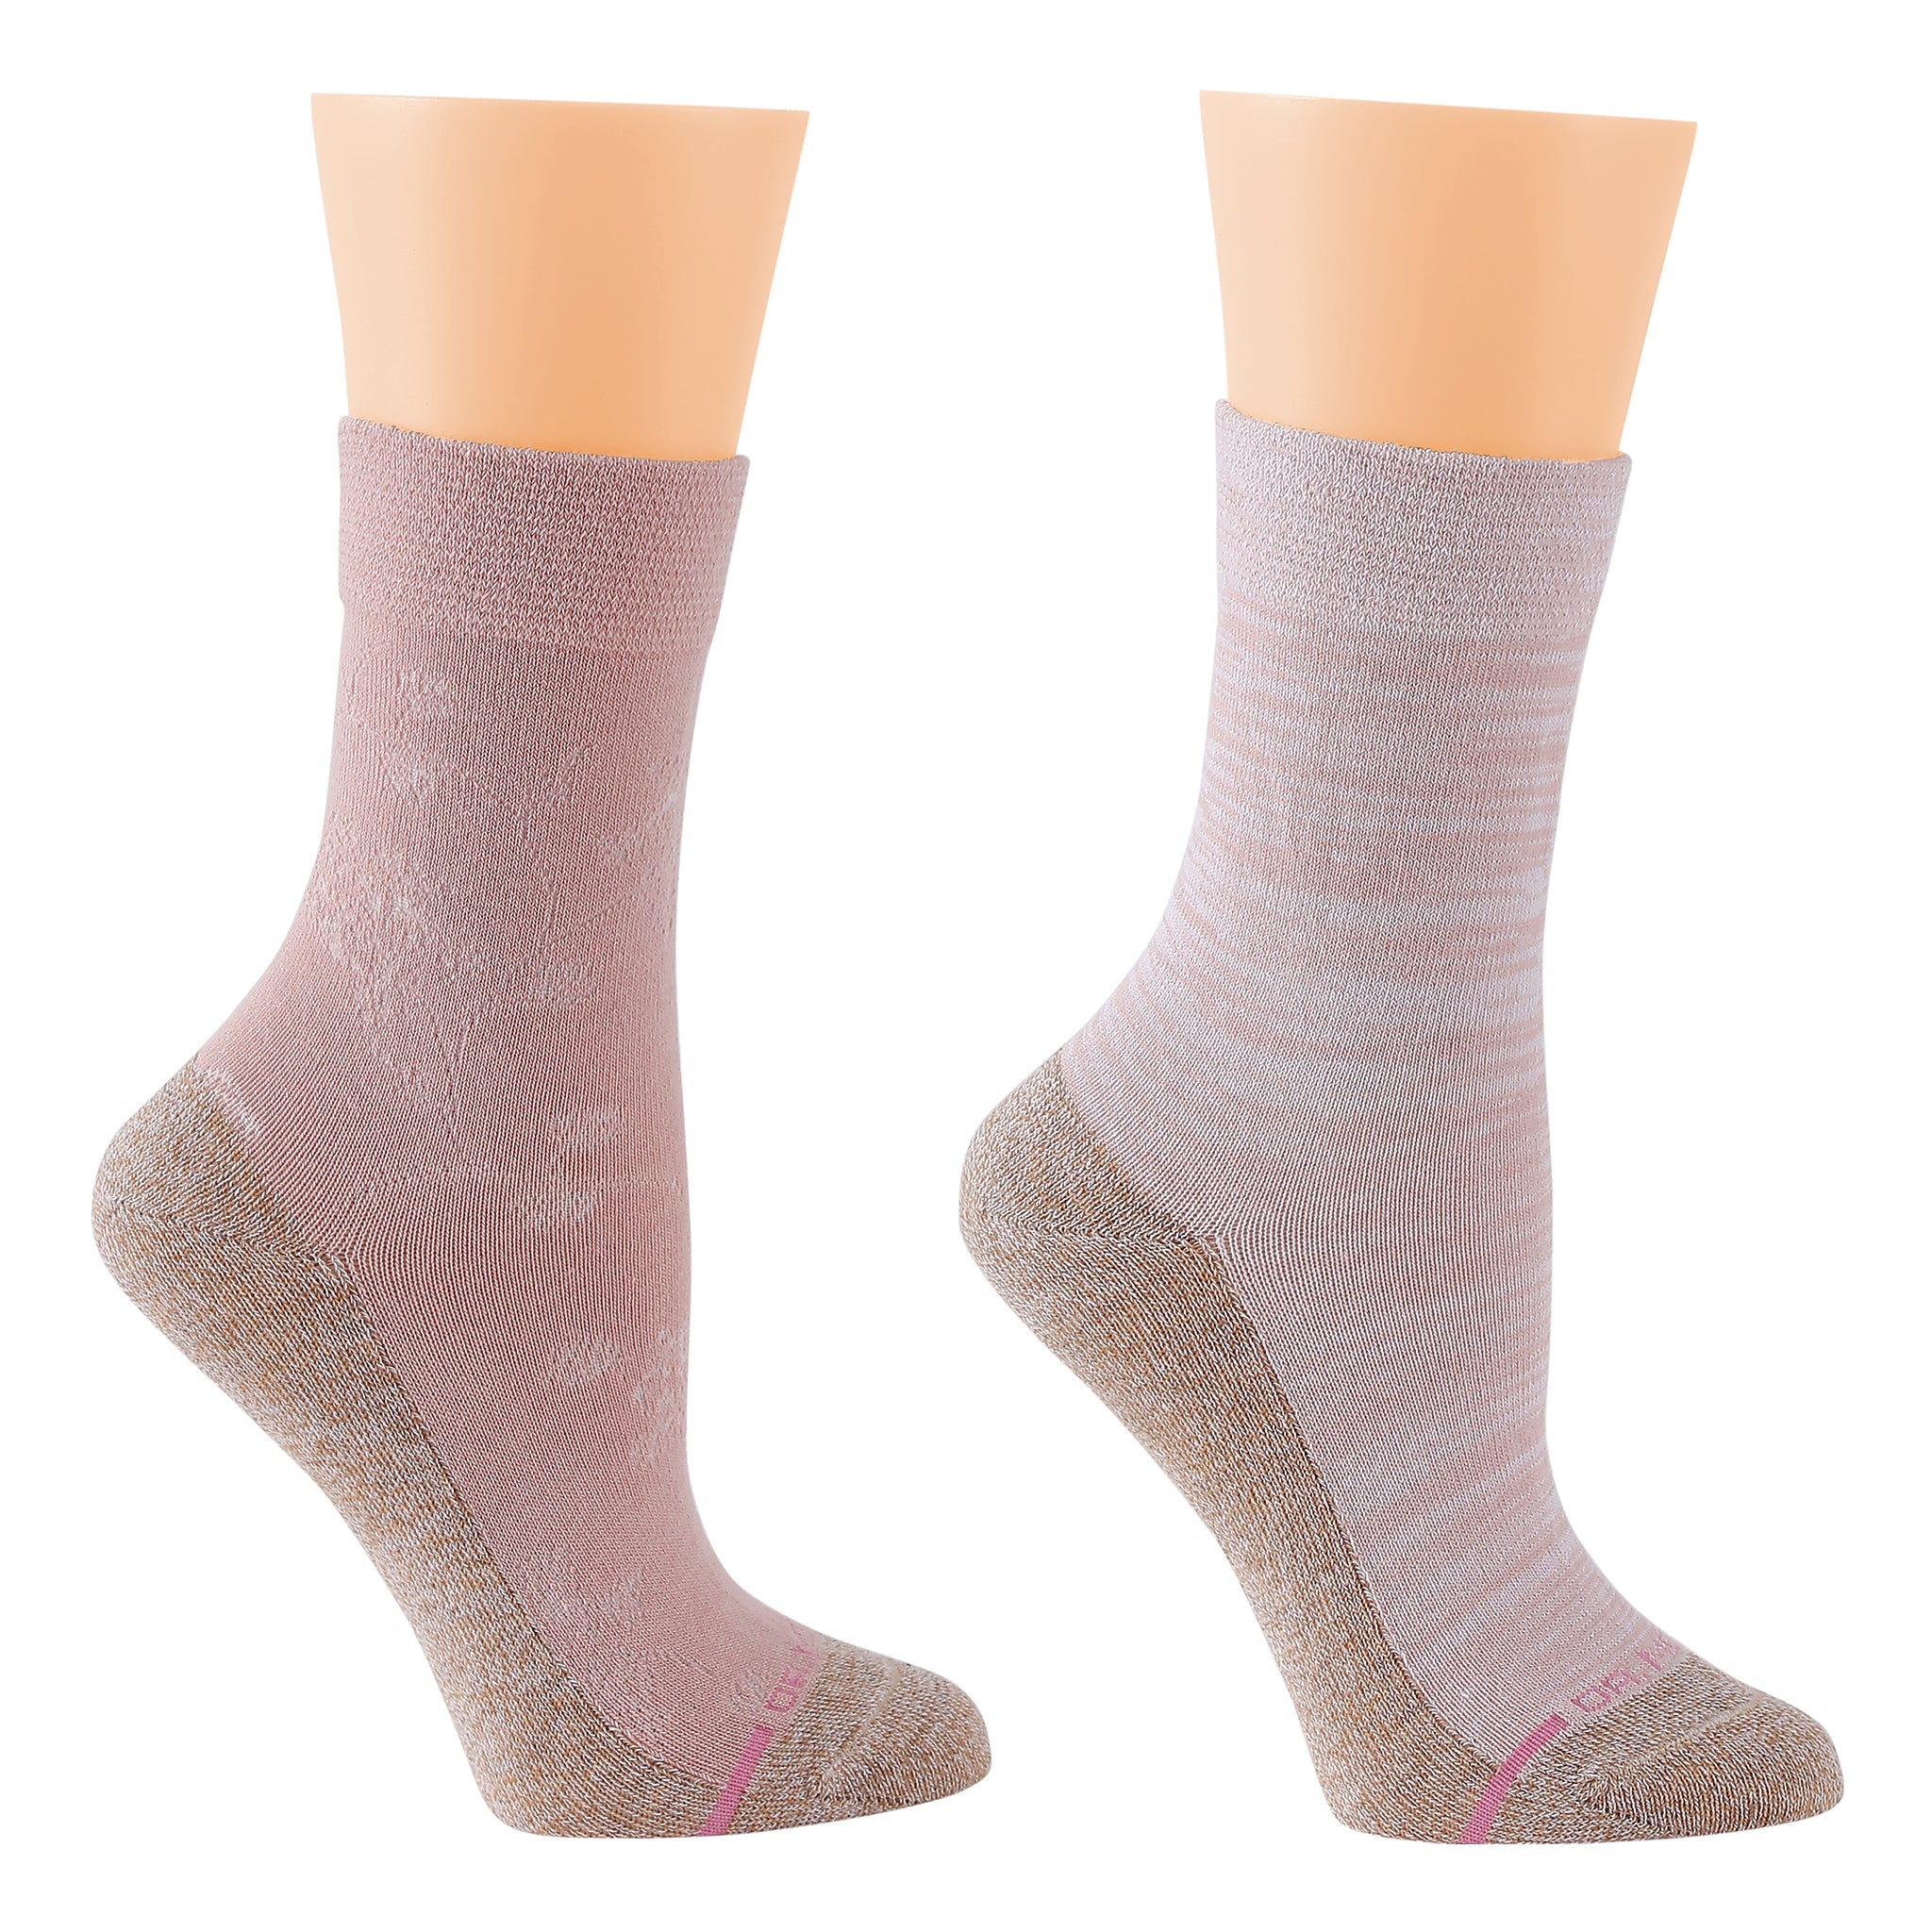 Comfort Top Socks For Women | Dr. Motion | Floral